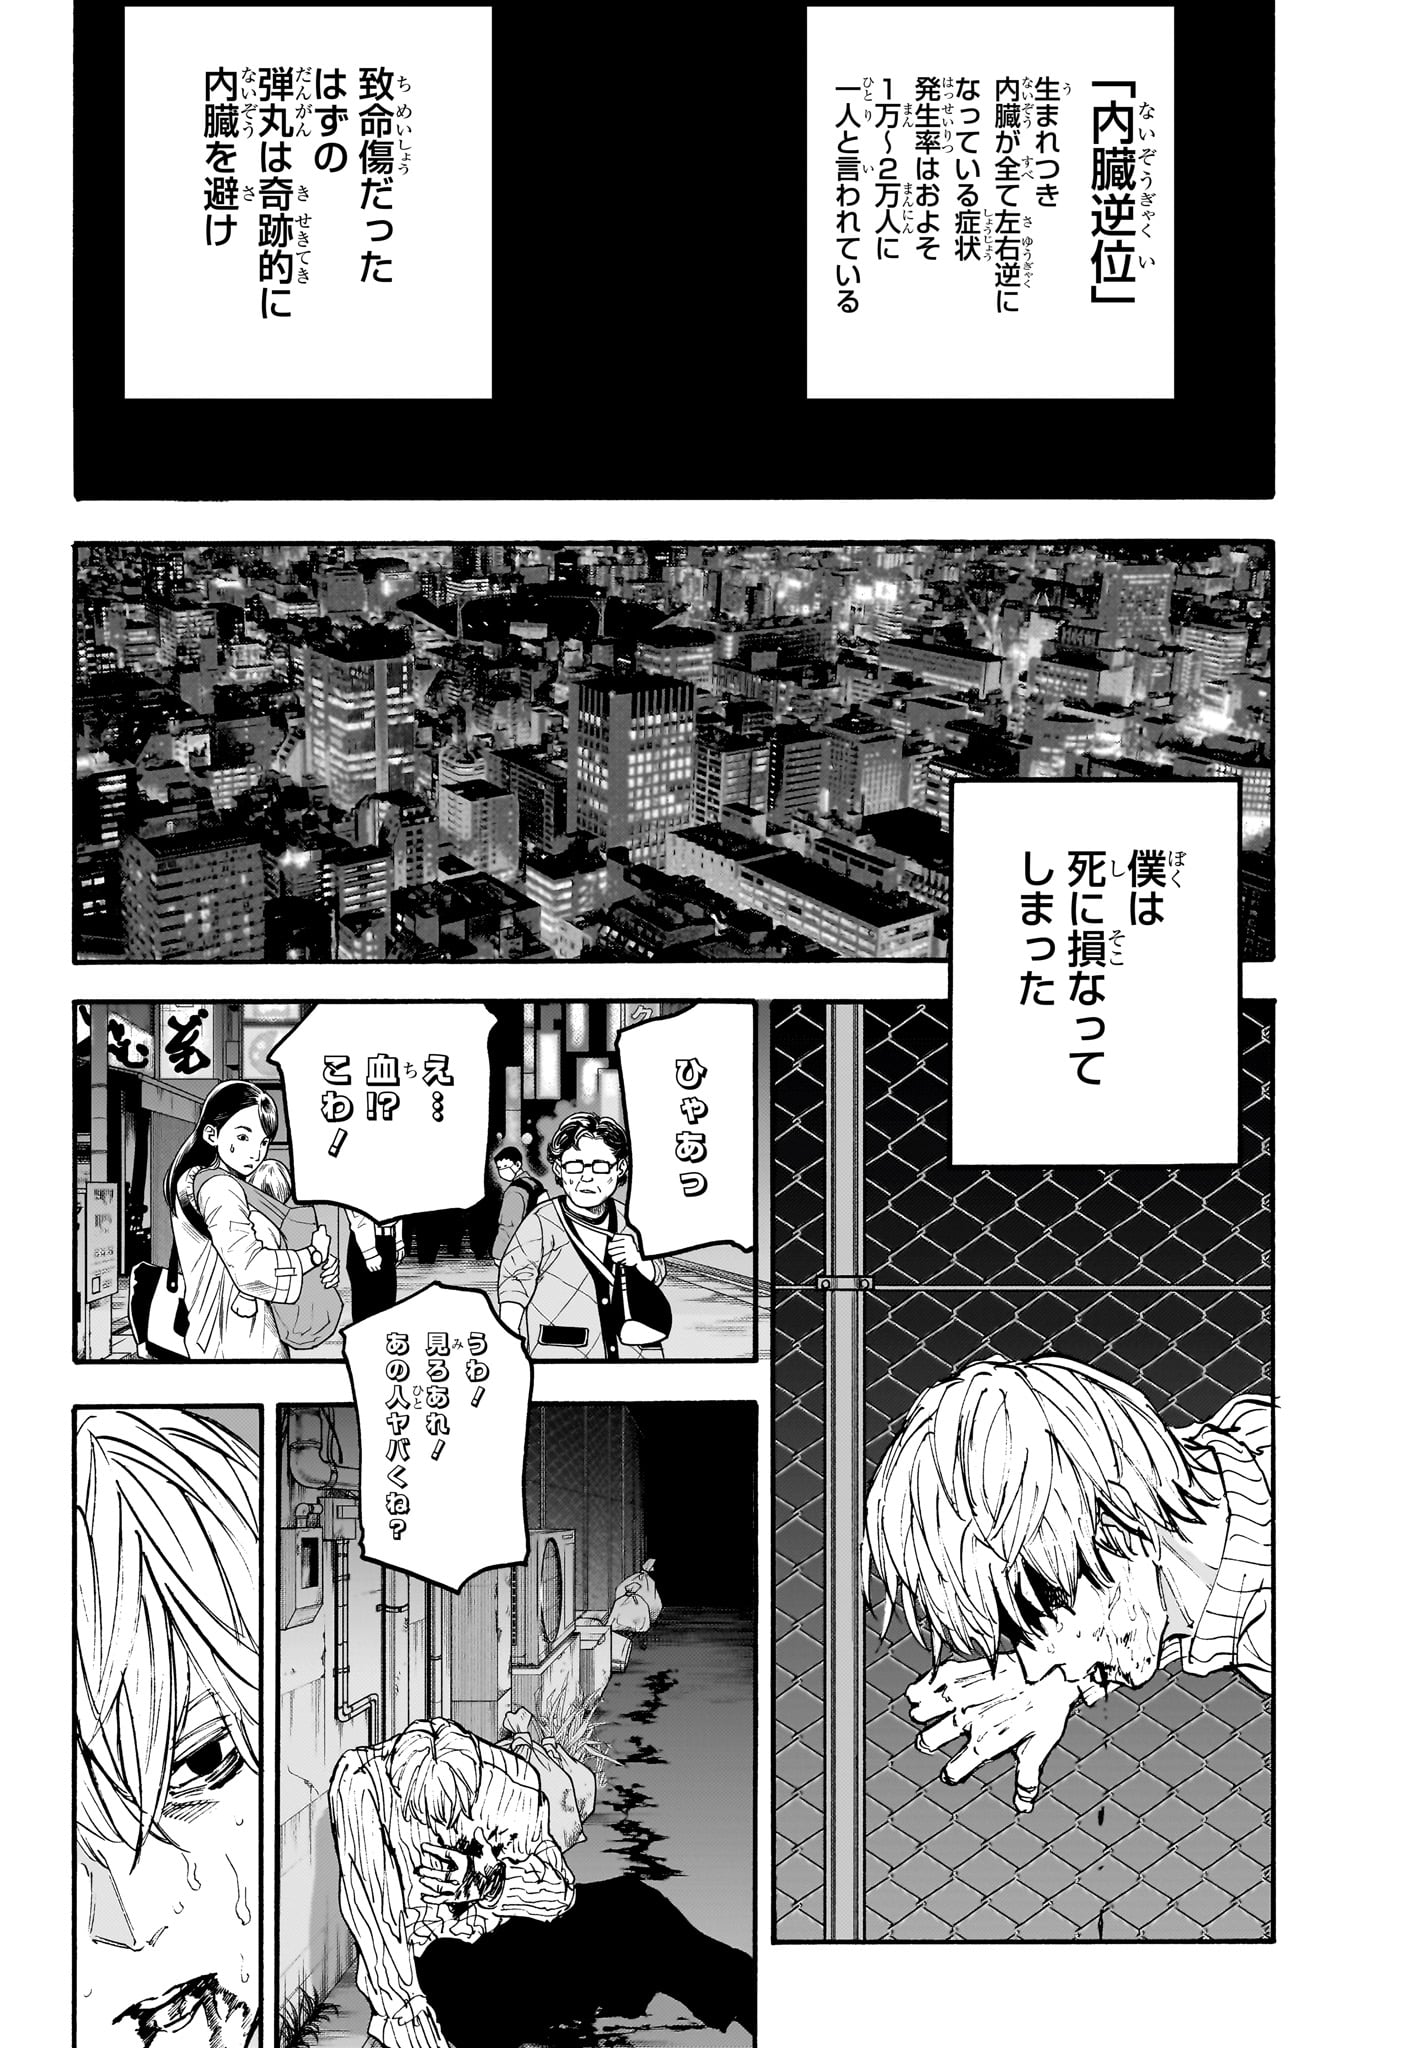 Sakamoto Days - Chapter 175 - Page 12